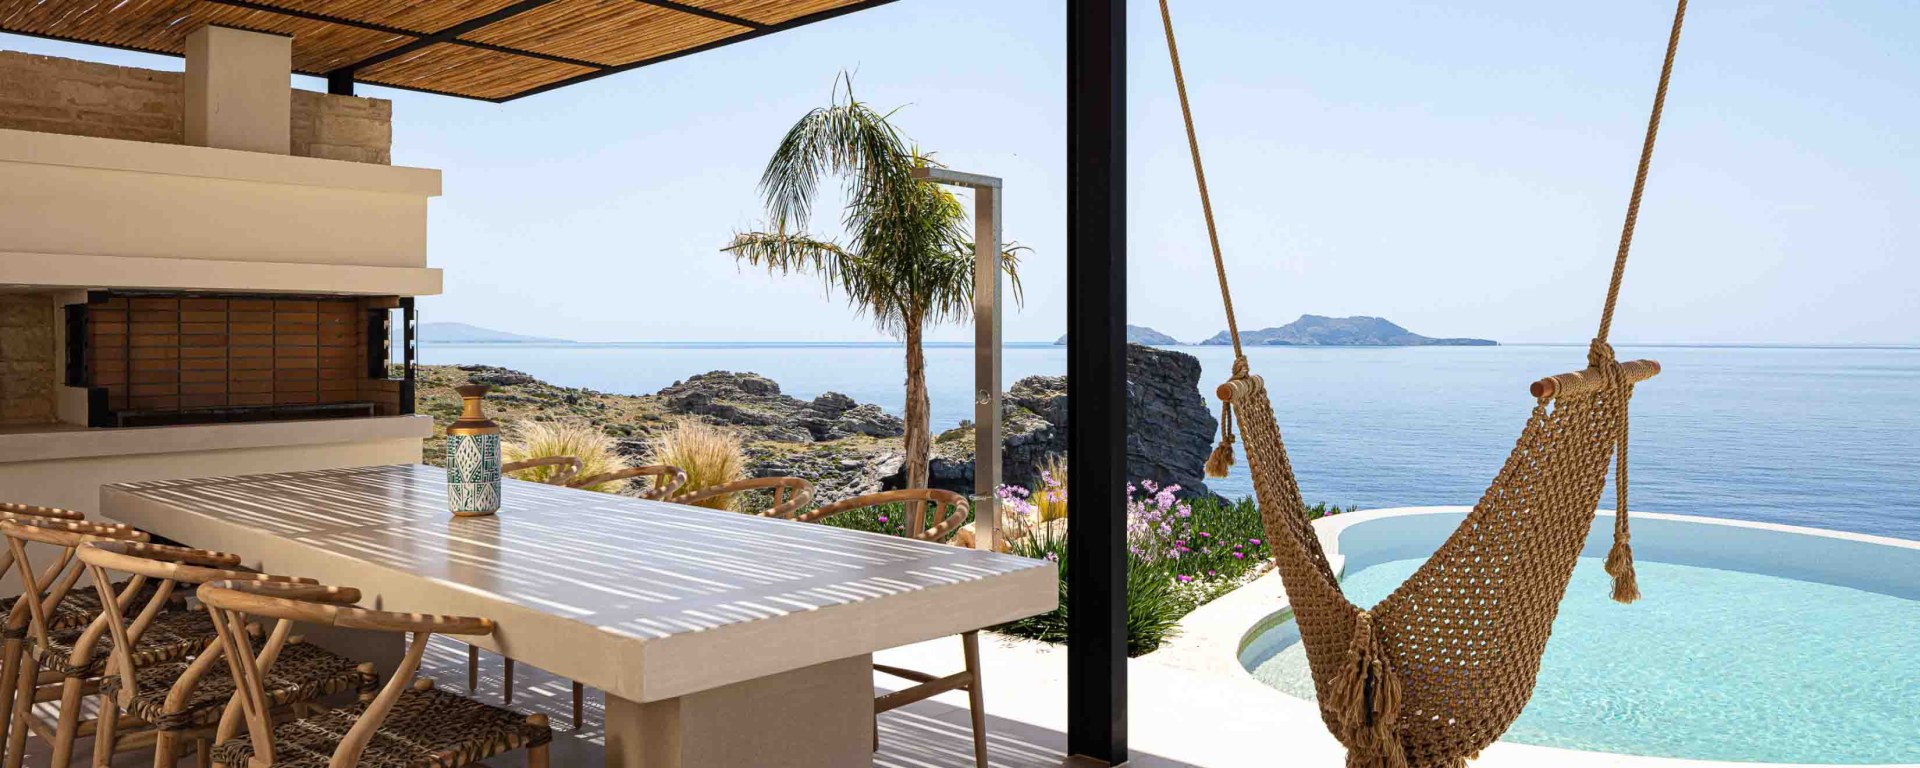 Kreta Luxus Ferienhaus Am Meer